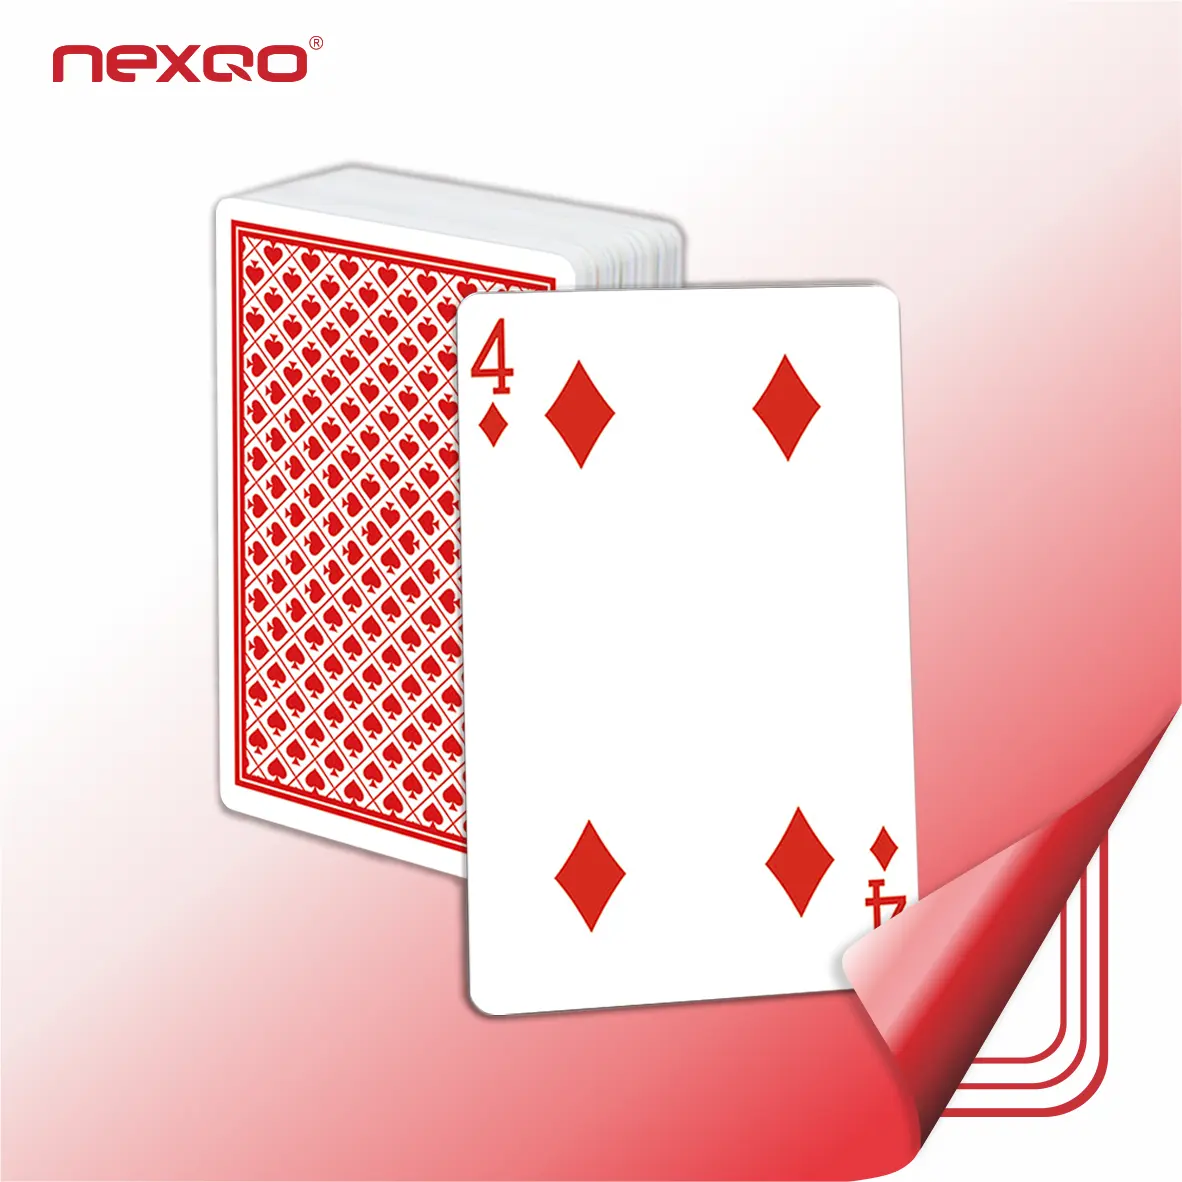 Son ürün logosu baskılı NFC RFID poker oyun kartları